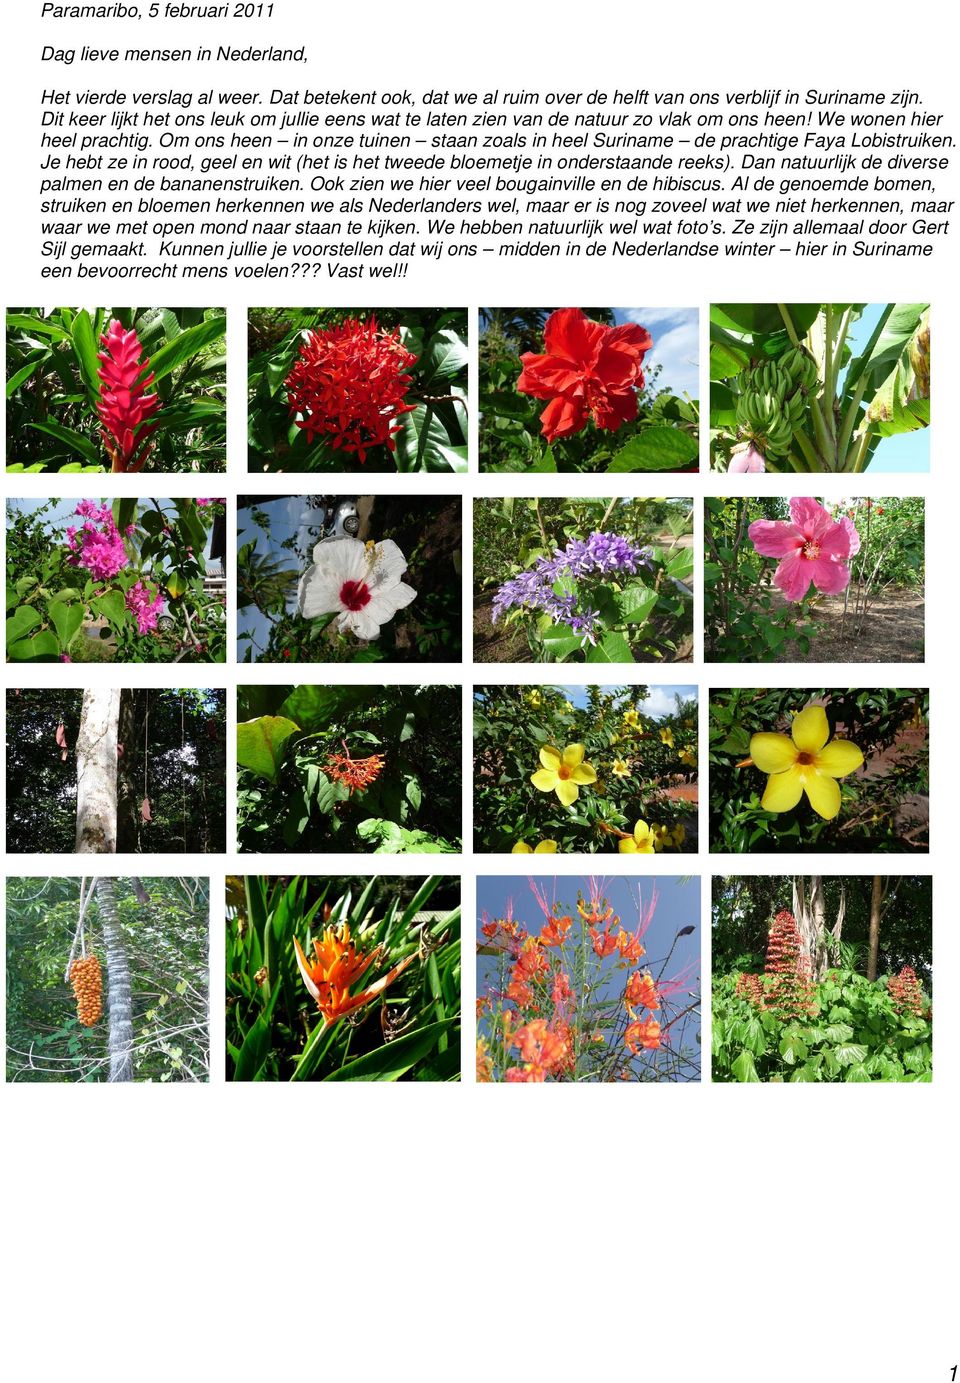 Om ons heen in onze tuinen staan zoals in heel Suriname de prachtige Faya Lobistruiken. Je hebt ze in rood, geel en wit (het is het tweede bloemetje in onderstaande reeks).